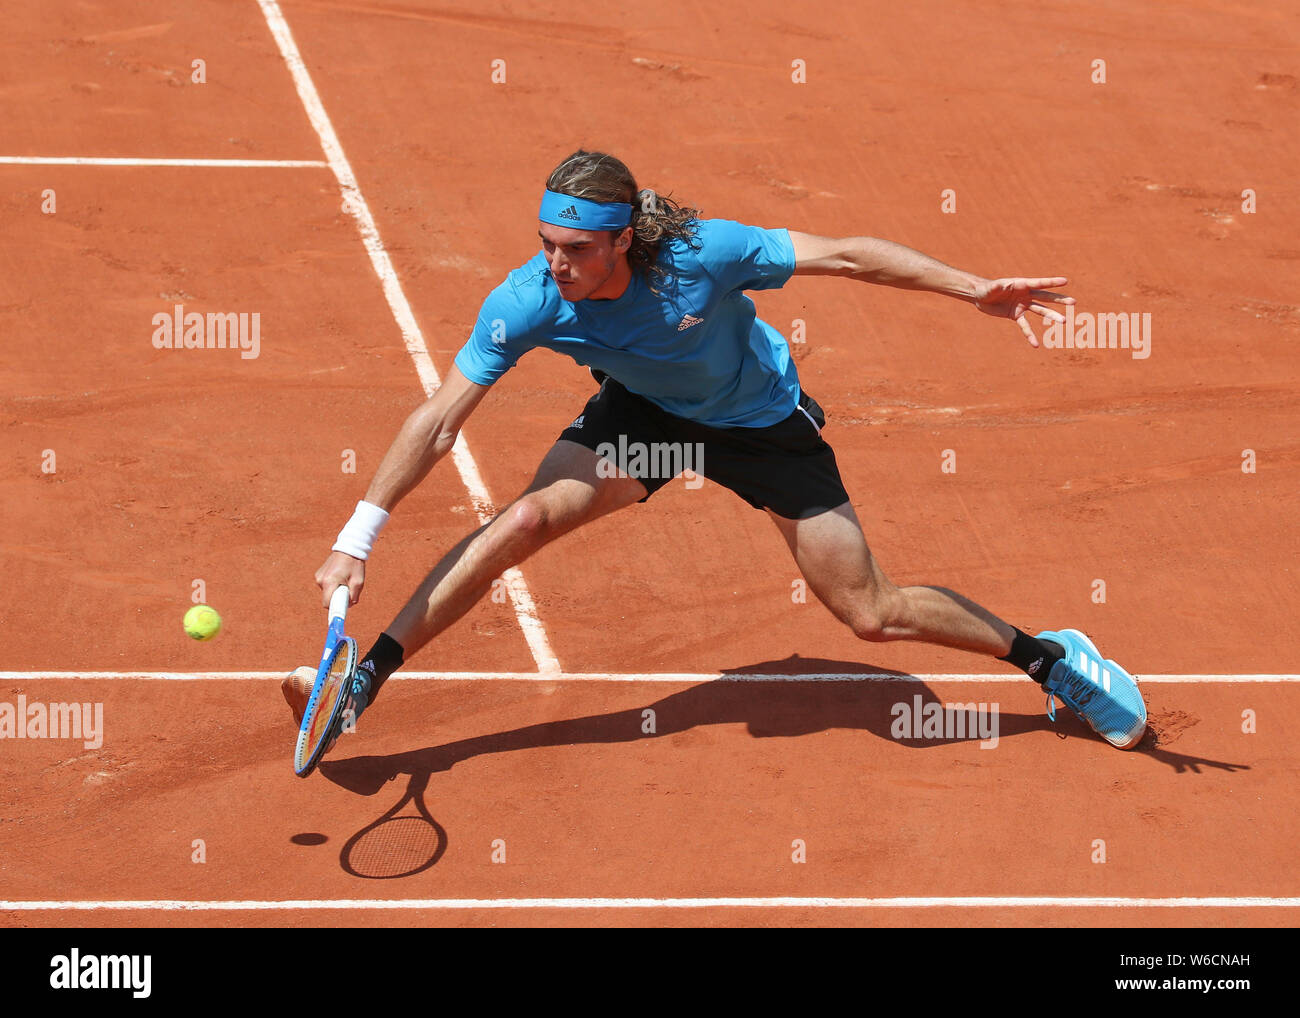 Joueur de tennis grec Stefanos Tsitsipas jouer a sauvé tourné en 2019 Open de France, Paris, France Banque D'Images